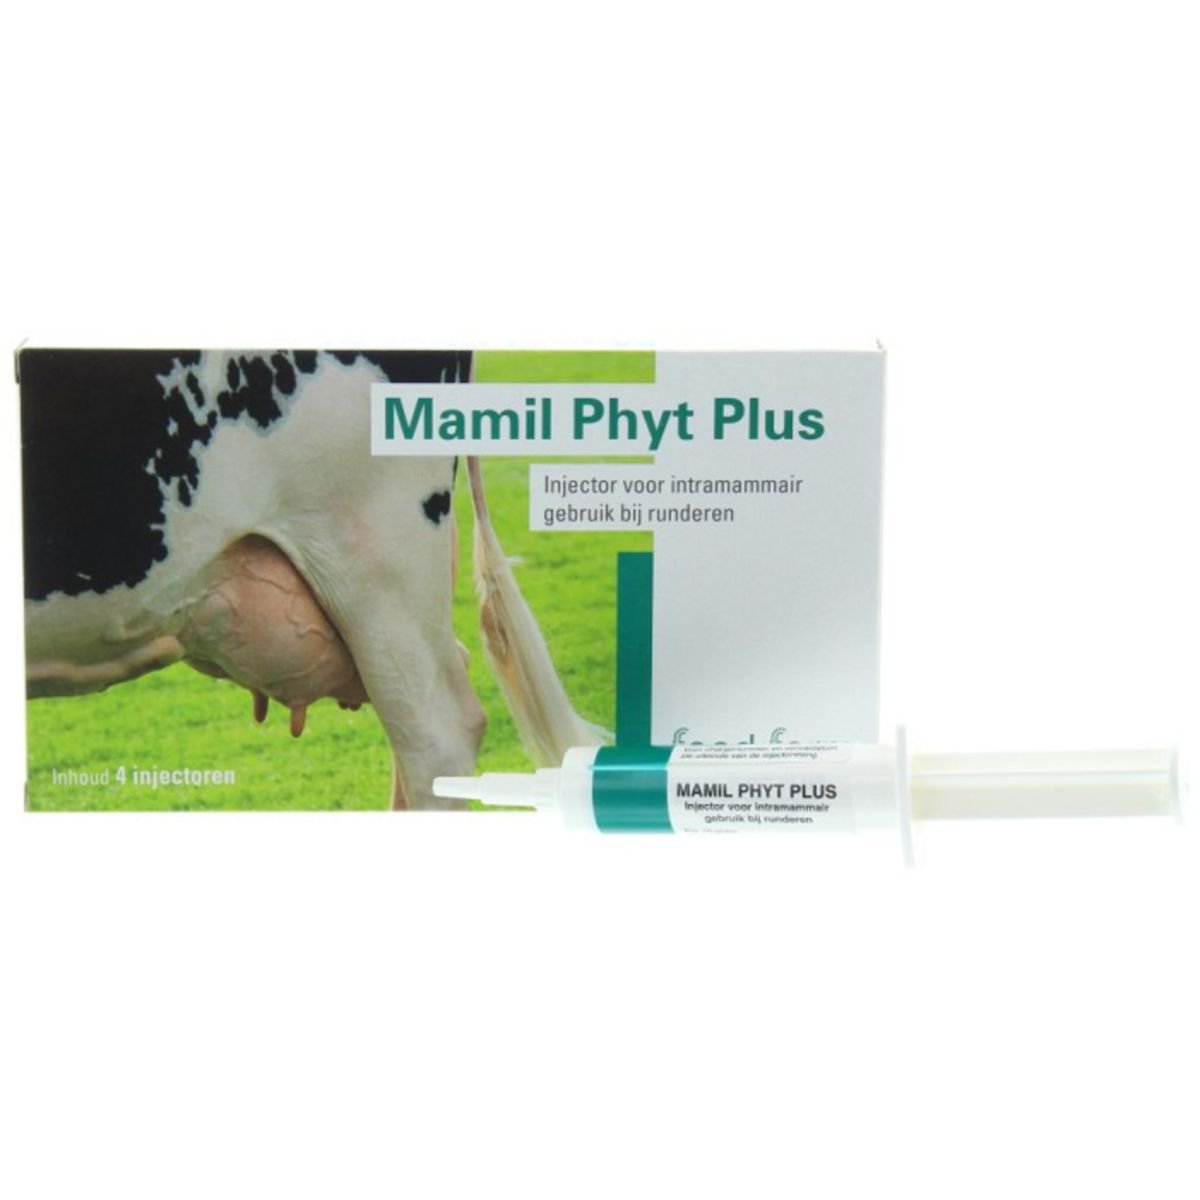 Feed Farm Mamil Phyt Plus Mastitis Inyectores. Para combatir y prevenir las infecciones de ubre.